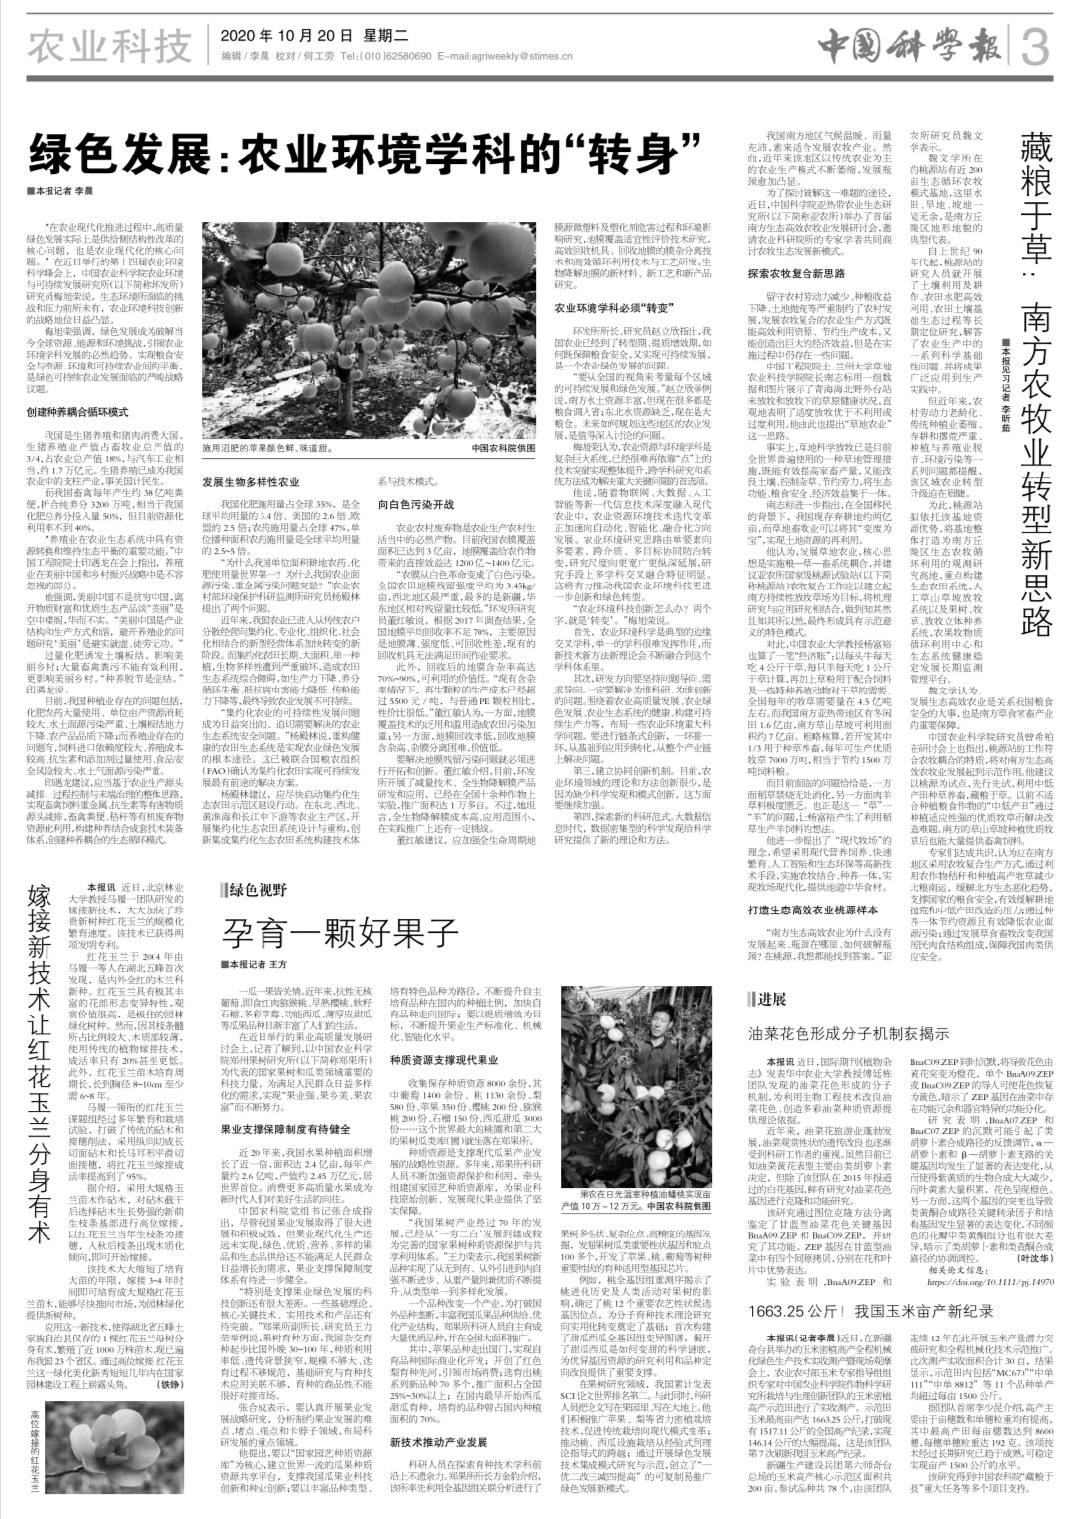 中国科学报